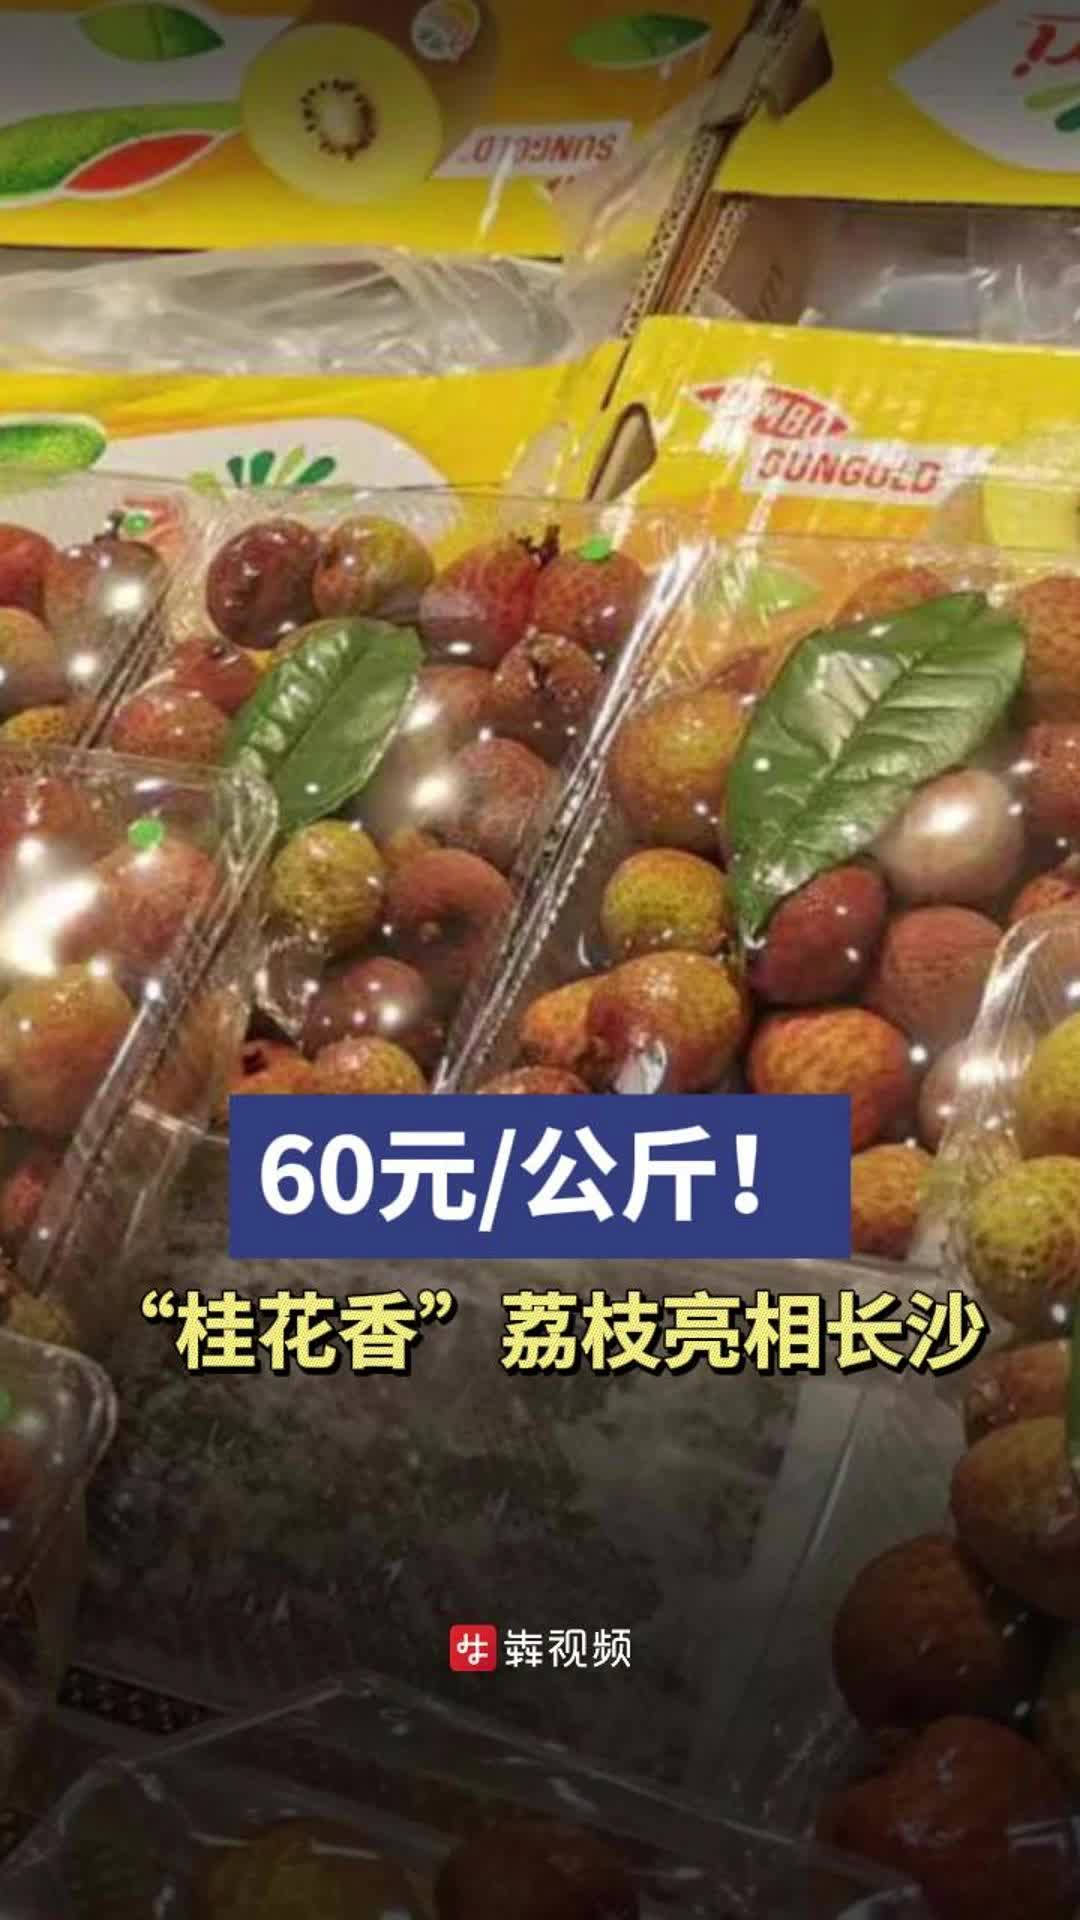 桂花香荔枝集中上市，售价60元/公斤不便宜